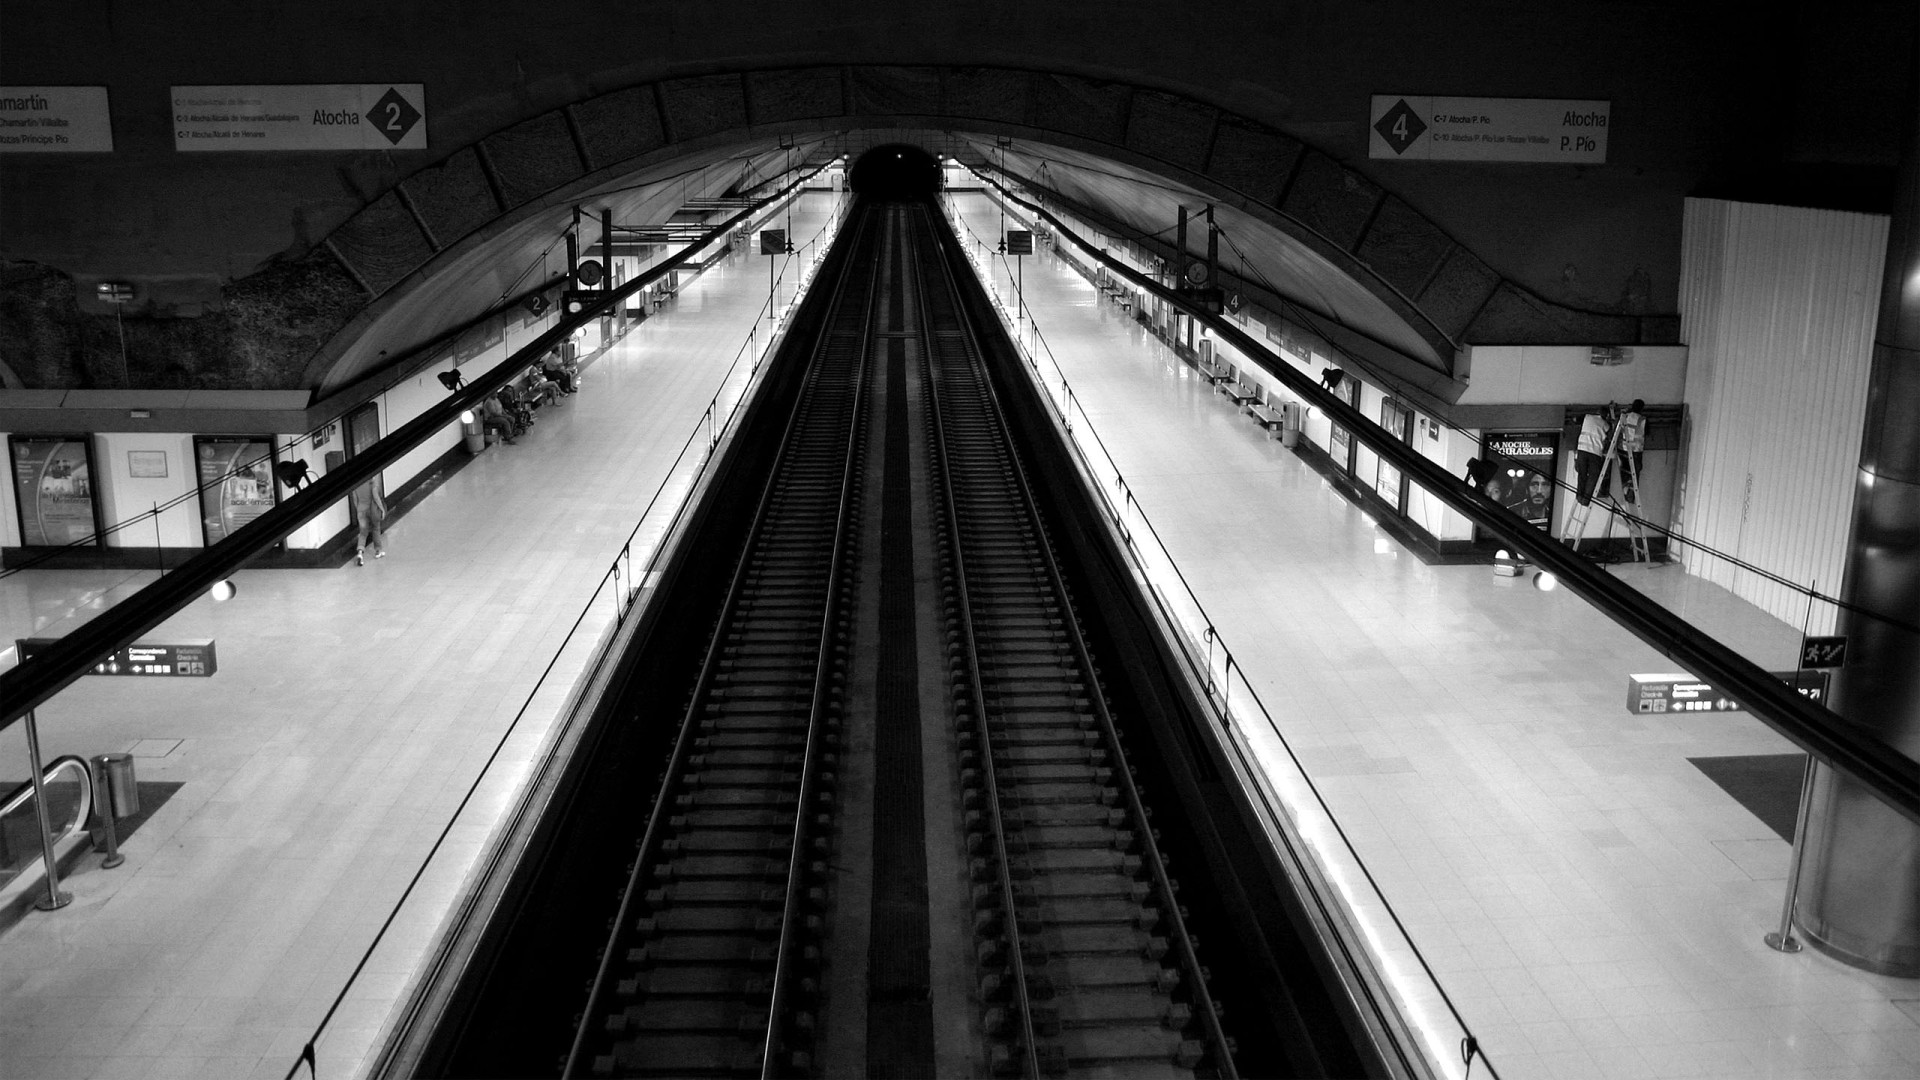 General 1920x1080 railway tunnel black white train station Madrid monochrome subway underground Spain